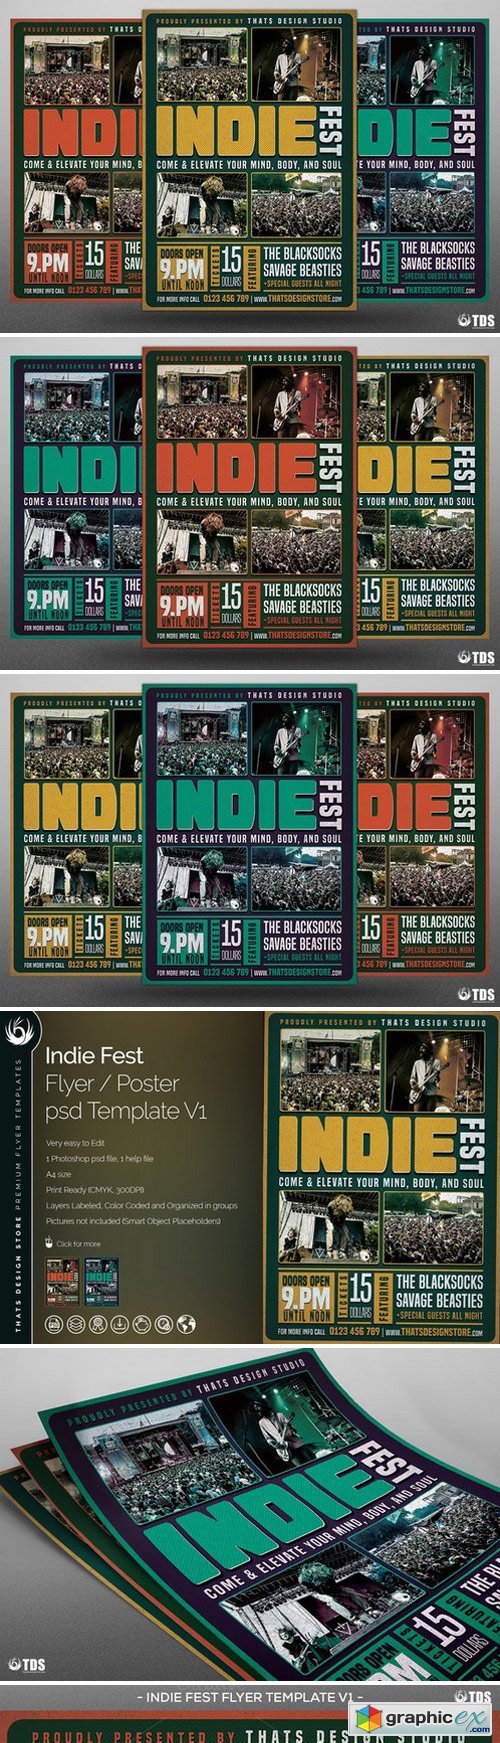 Indie Fest Flyer Template V1